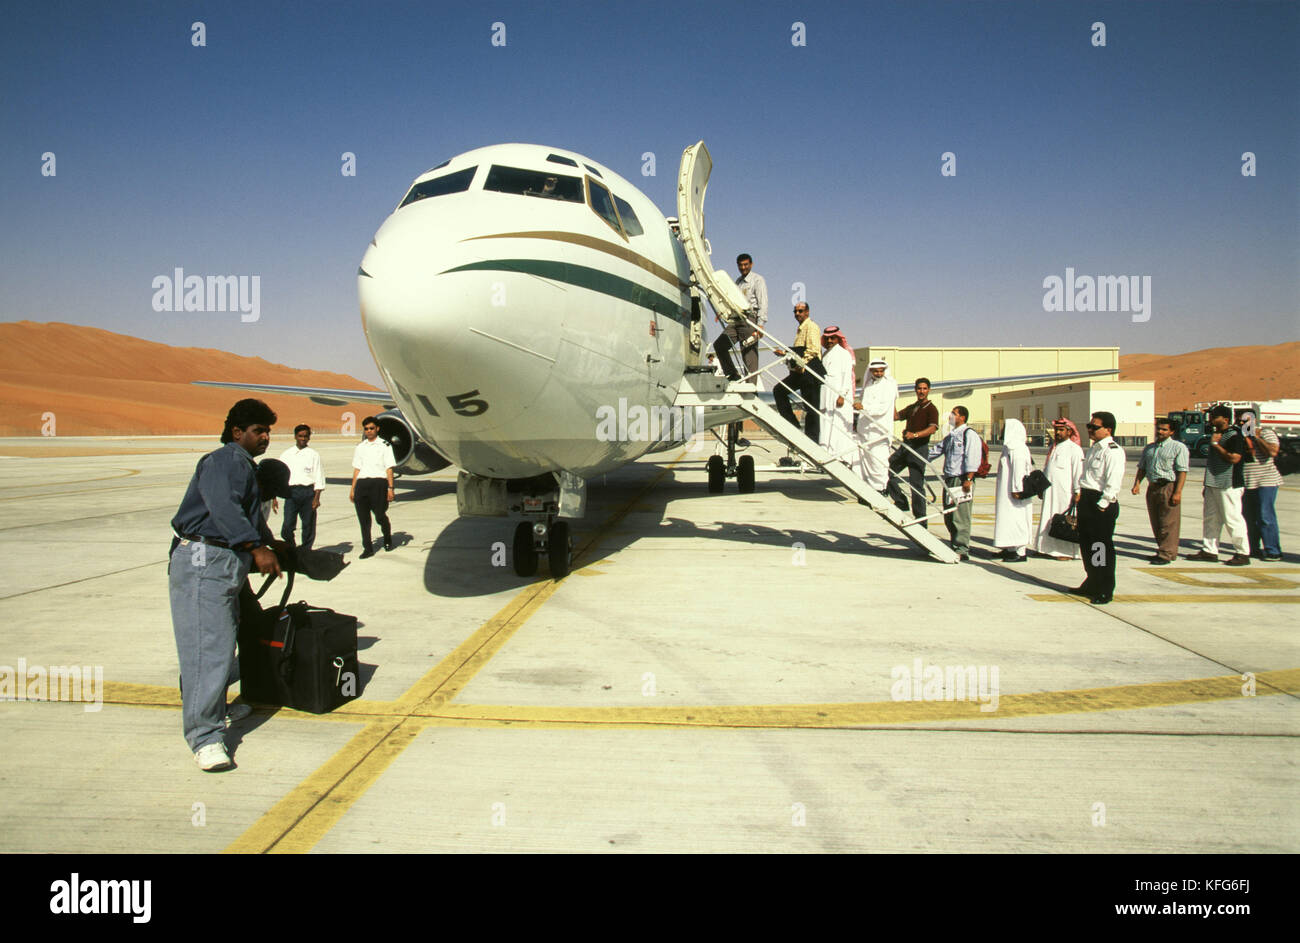 Saudi Aramco Mitarbeiter an Bord des Saudi Aramco 737 Unternehmen ebene Shaybah Flughafen, nach ihrer Arbeit pflicht Tour am Shaybah Gas öl Luftzerlegungsanlage (gosp), eine große Gas-, Öl- und Produktionsstätte in das Leere Viertel Wüste Saudi Arabiens, in der Nähe der Grenze zu den Vereinigten Arabischen Emiraten. Stockfoto